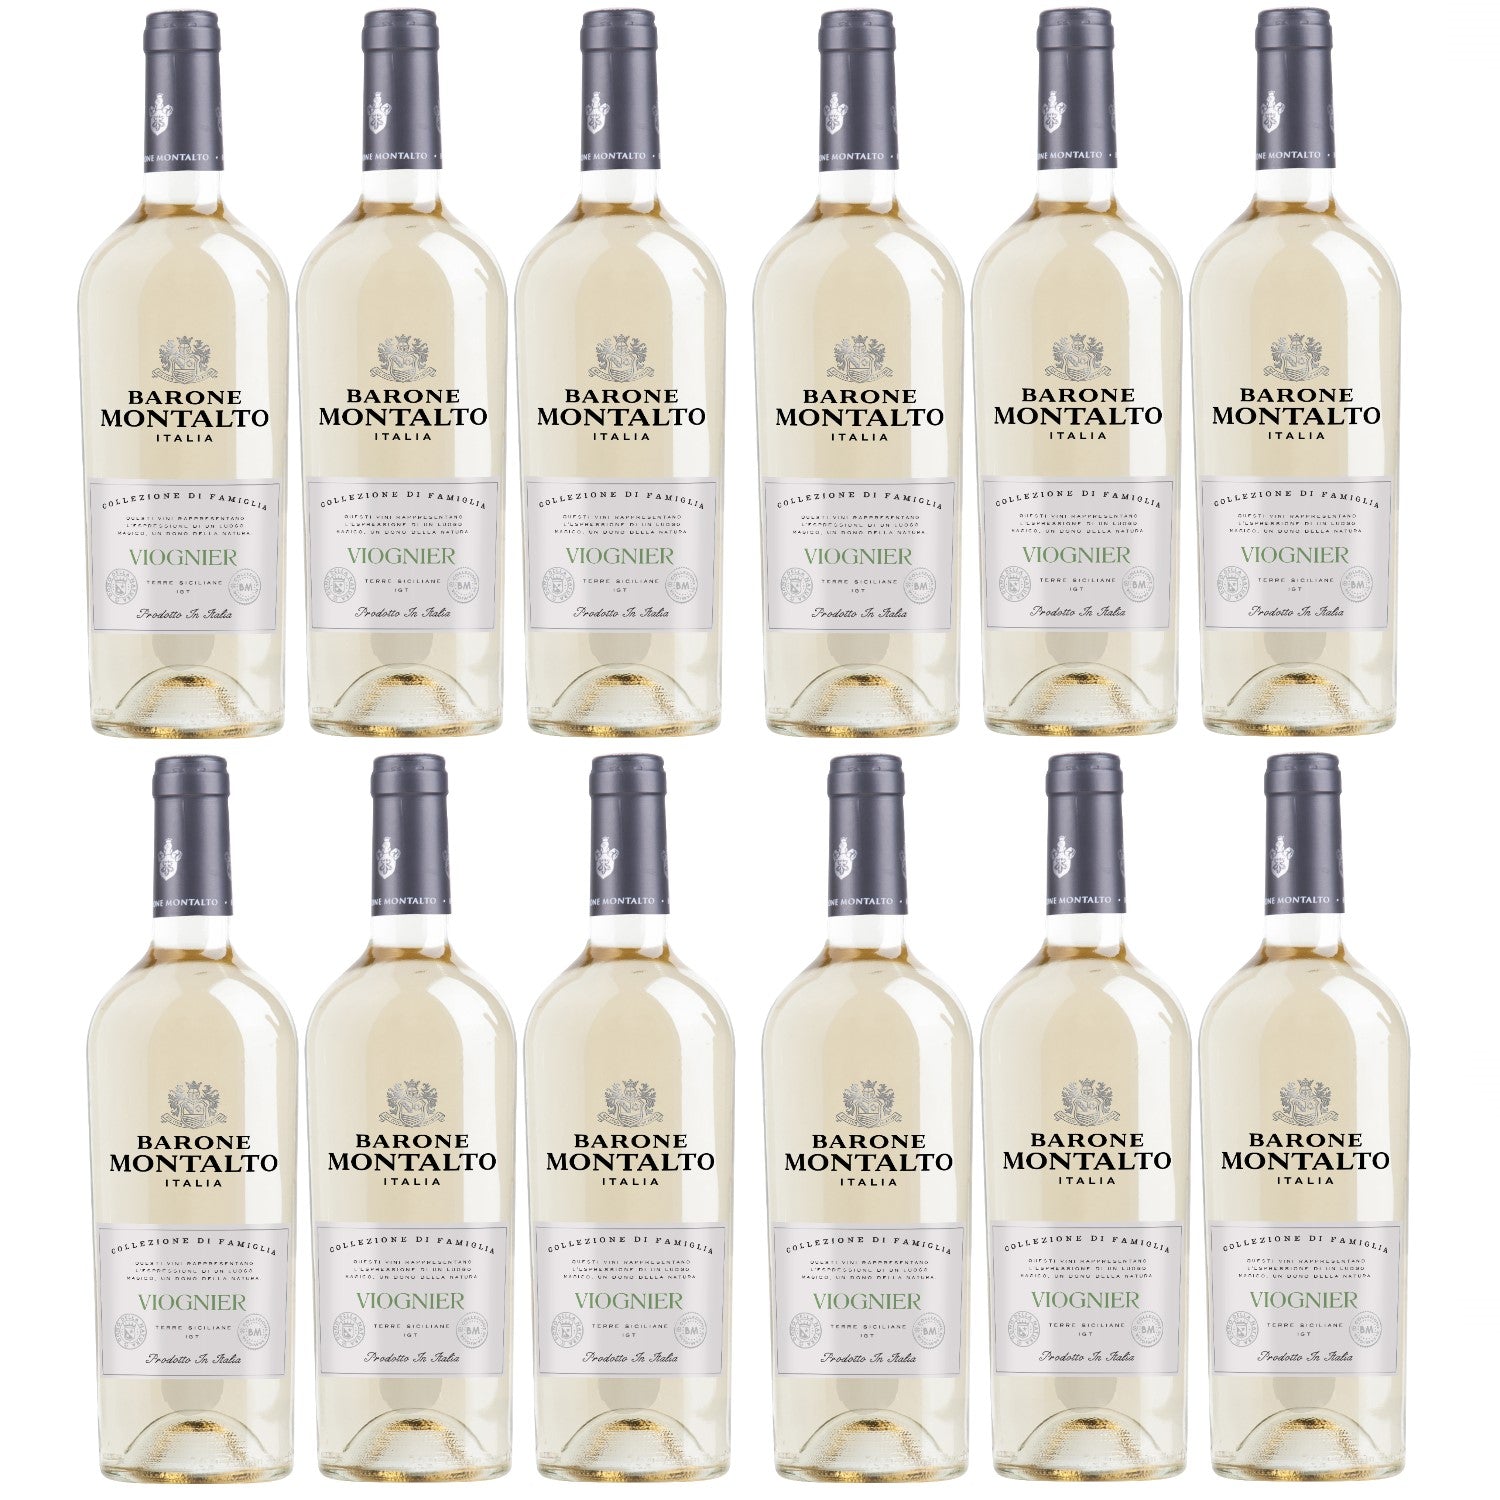 Barone Montalto Viognier Terre Siciliane IGT Weißwein Wein halbtrocken (12 x 0.75l) - Versanel -